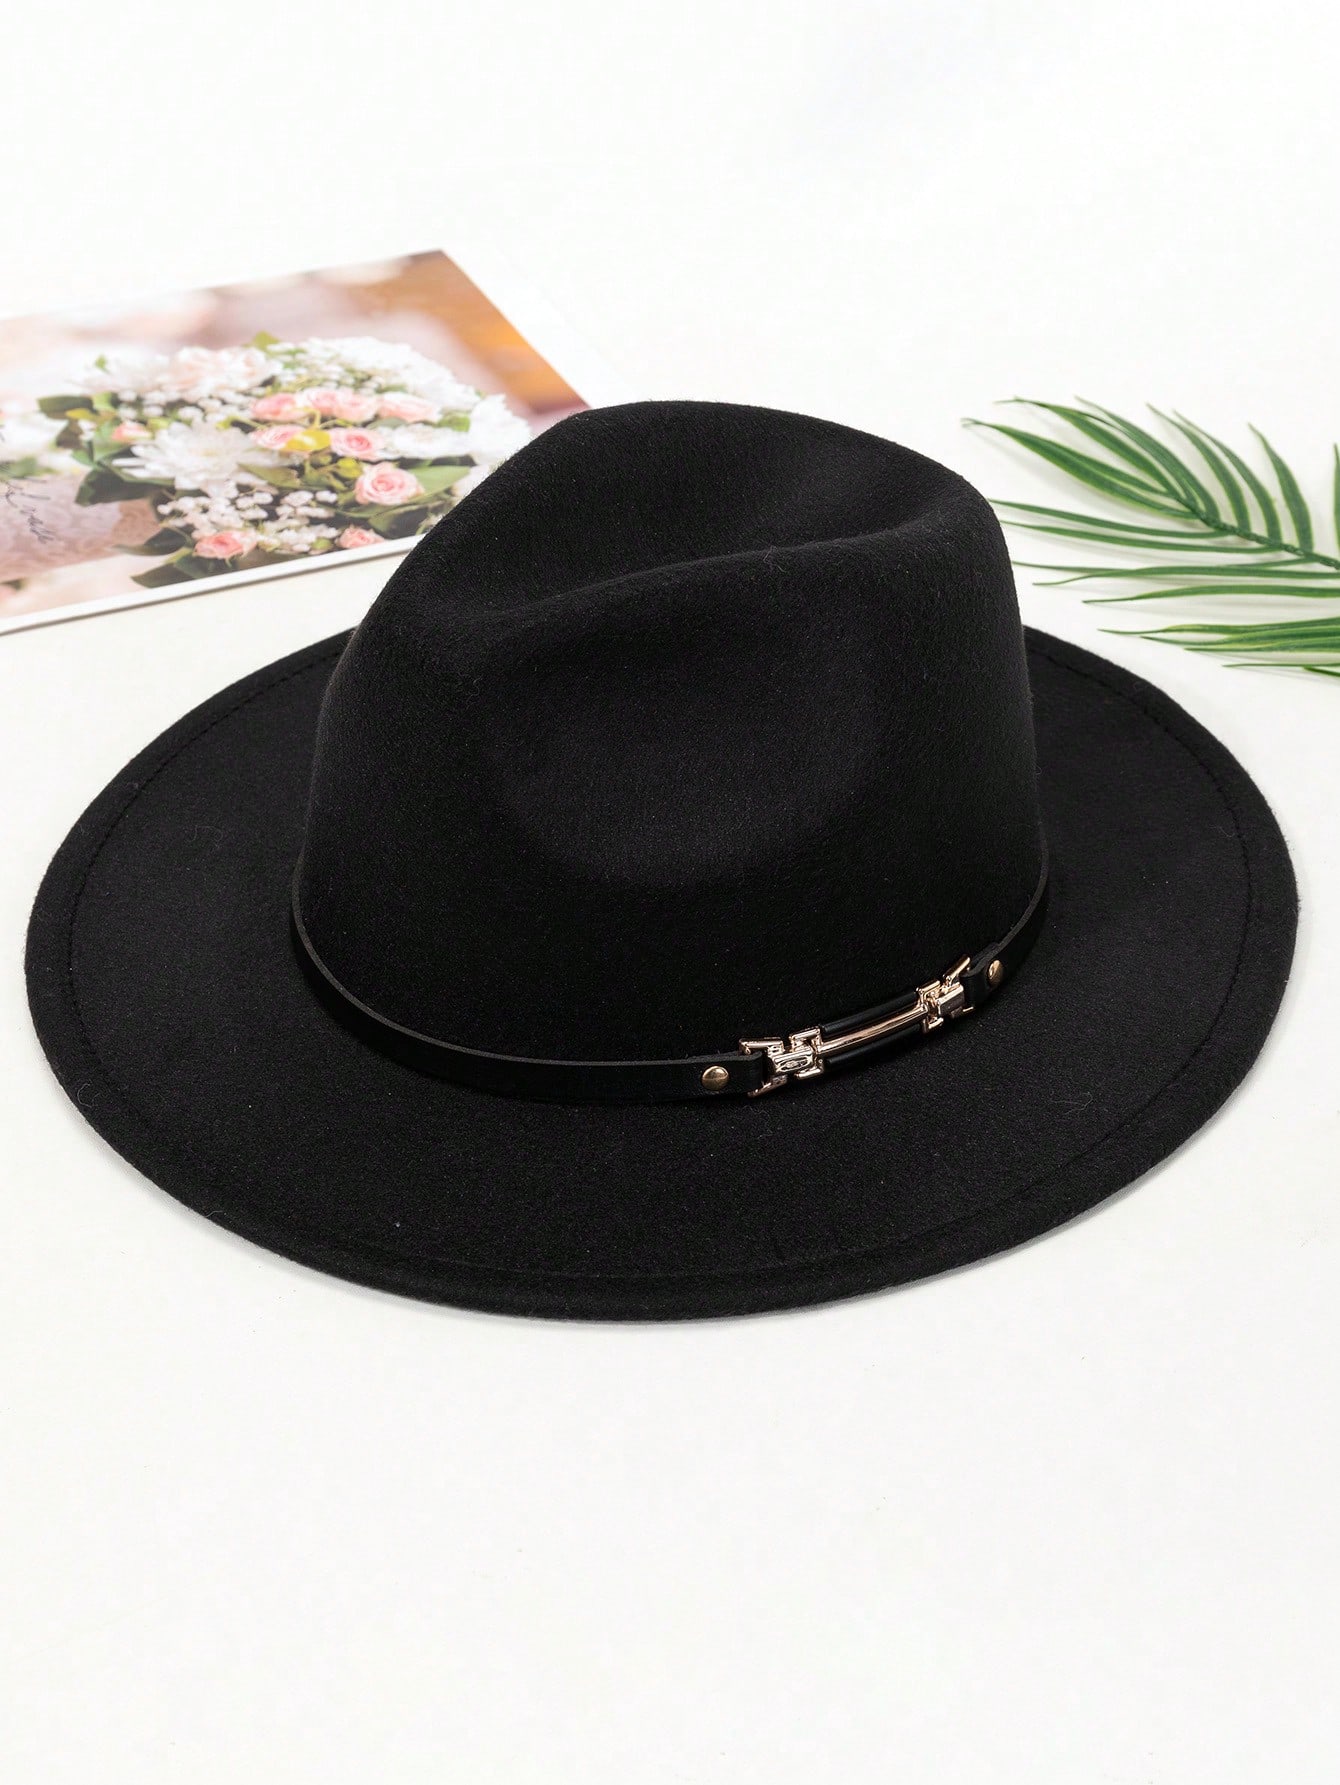 1 шт. черная элегантная солнцезащитная шерстяная шляпа в стиле джаз для мужчин, черный панама с принтом пейсли для мужчин и женщин двусторонняя шляпа с винтажным принтом кешью солнцезащитная рыболовная шляпа в стиле хип хоп